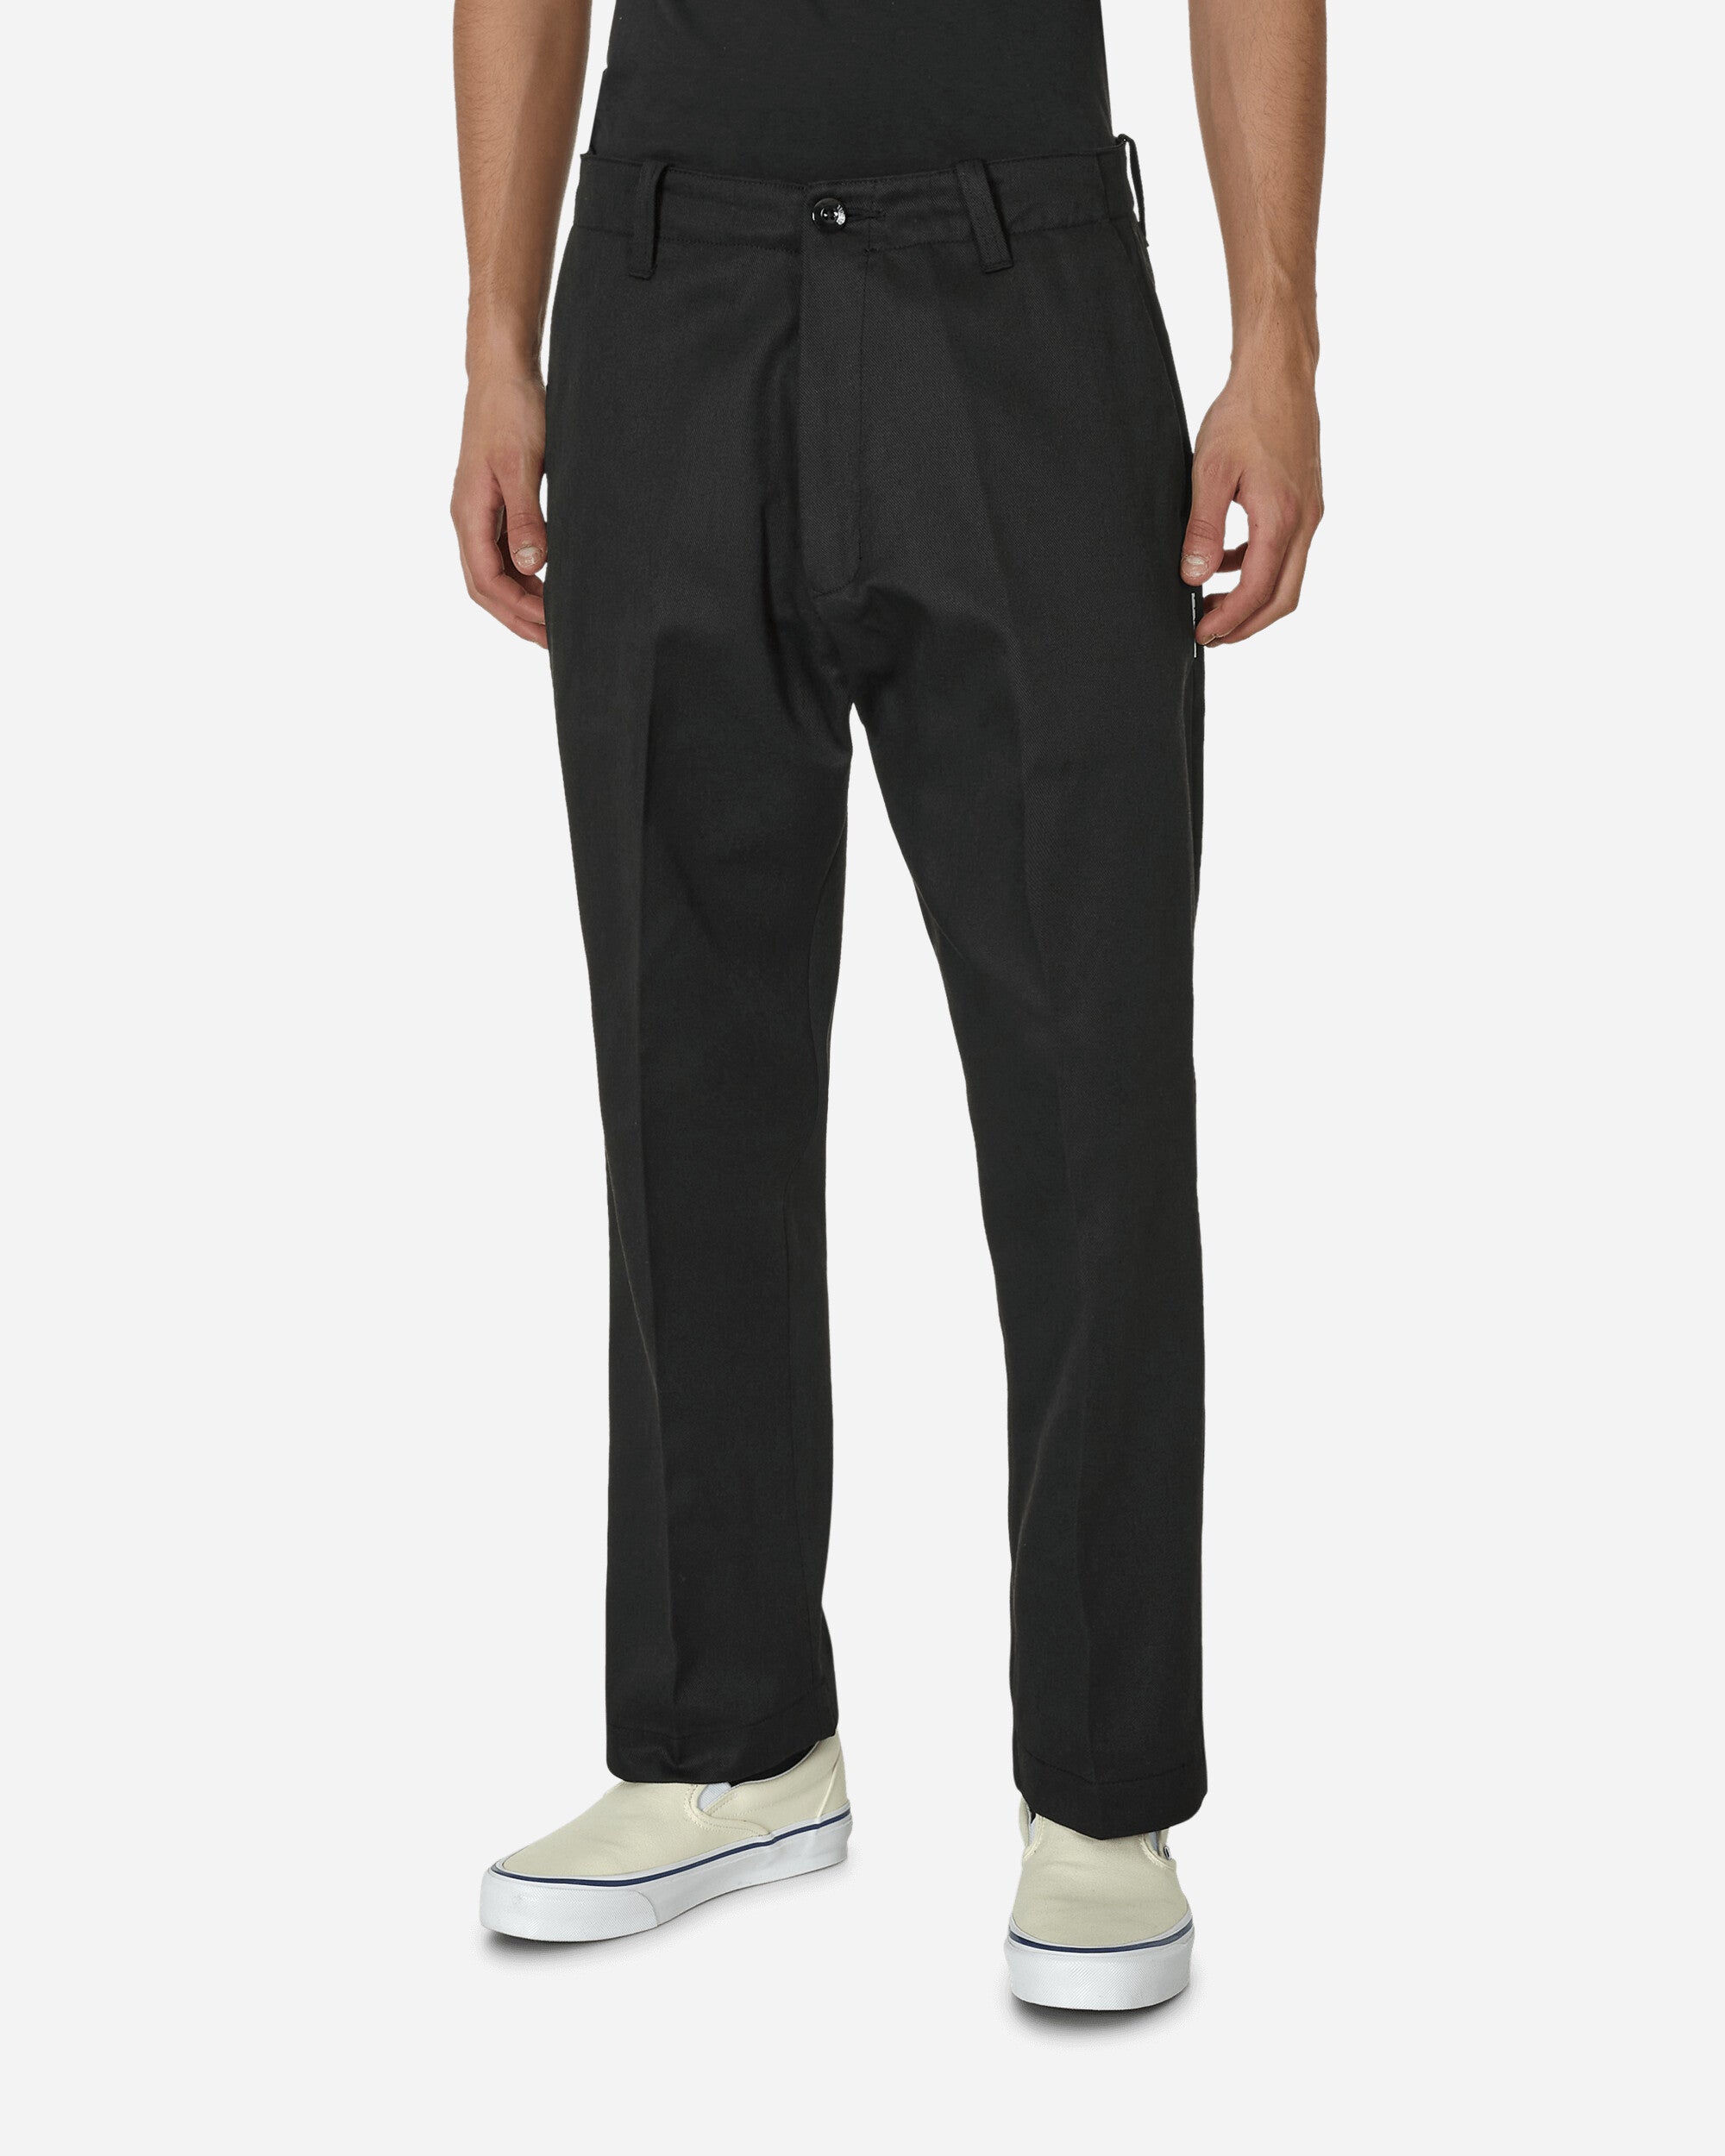 Men's Chino Regular Pants - Inseam 30 Inch